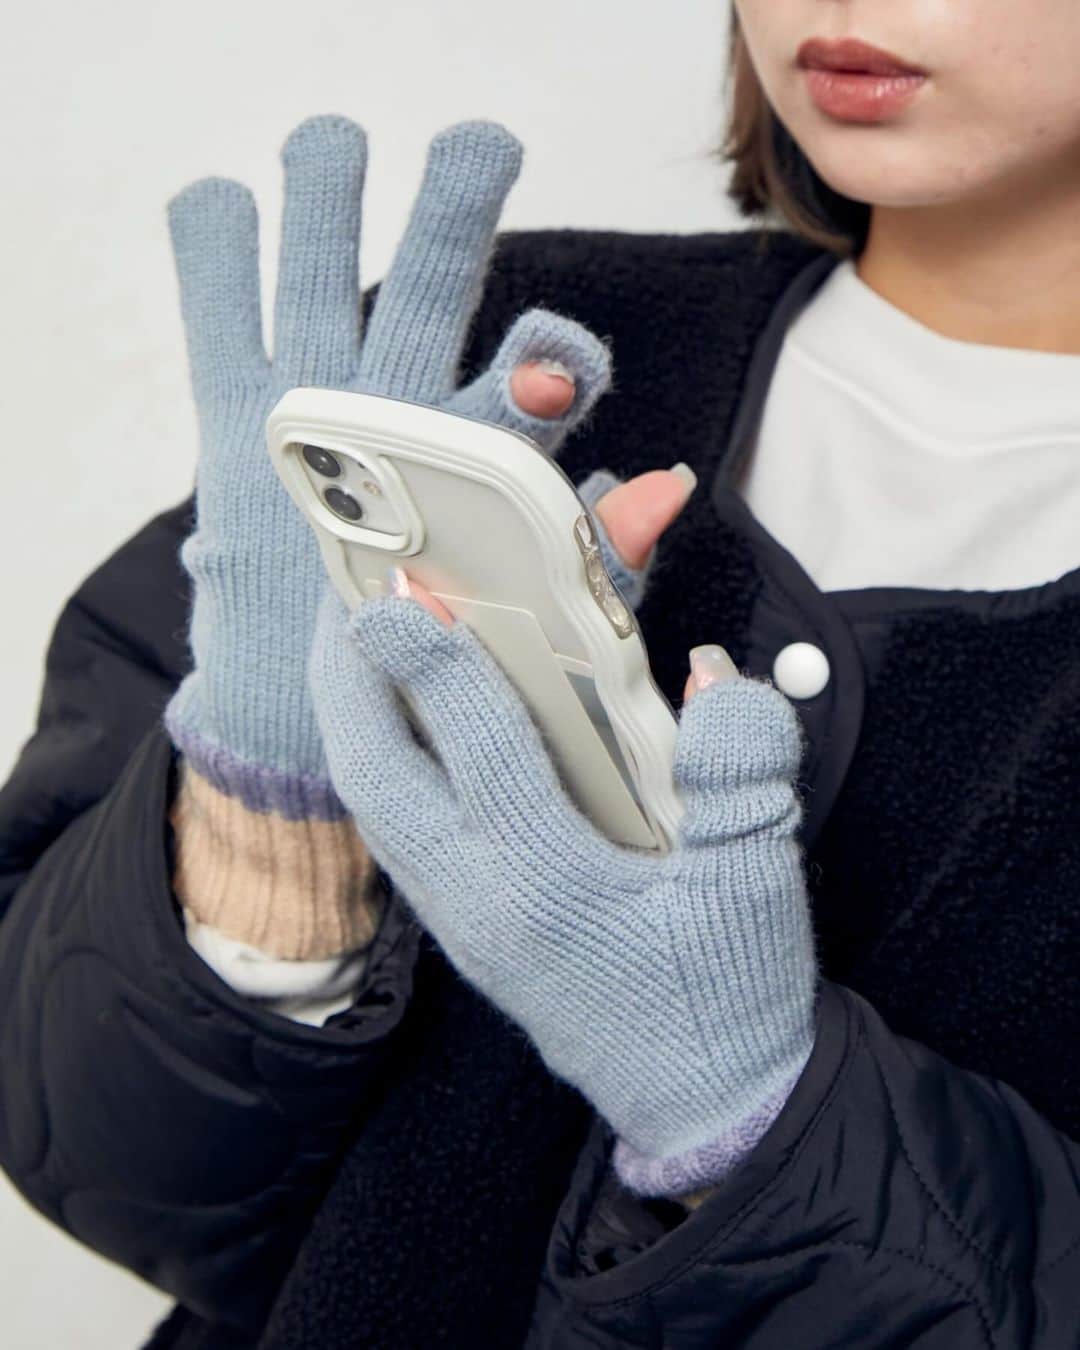 Lattice LesSignesのインスタグラム：「【見返すには保存がおすすめ！】 あたたかいニット素材のグローブが登場！ 親指と人差し指の指先にあるホールディテールが 特徴の手袋🧤 ホールディテールを活用してスマホの操作が可能◎ 寒い冬に暖かく実用性のあるアイテムです！  ニットグローブ ¥1200(税込¥1320)  オンラインストアは @lattice_lessignesの プロフィールのURLから。  ￣￣￣￣￣￣￣￣￣￣￣￣￣￣ #lattice #latticelessignes #ラティス#レシーニュ #冬コーデ #冬服コーデ #防寒コーデ #防寒グッズ #トレンド #スマホ操作も楽々 #寒い日コーデ #ニット手袋 #メンズもok #デイリー使い#防寒コーデ #スマホ操作可能 #スマホ操作できる #スマホ操作できる手袋 #コーデ#WEB先行#あったかコーデ#手袋女子 #冬がはじまるよ #防寒#ニットグローブ #手袋#冬ファッション #秋物コーデ#秋コーデ #お出掛けコーデ」